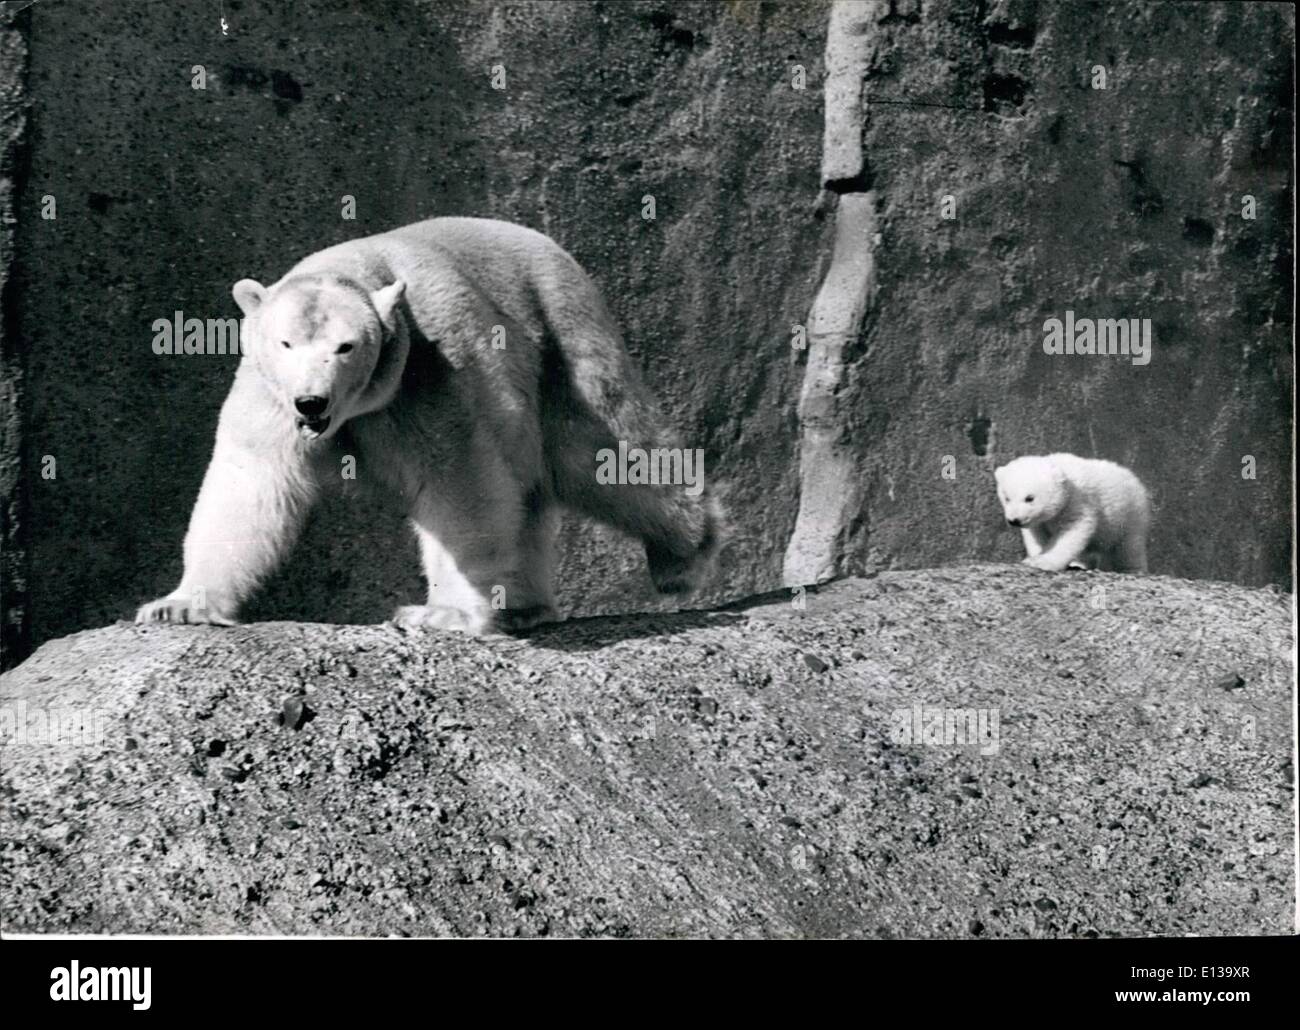 29 février 2012 - Suivre mon chef - Brumas a une amende de temps avec mère bébé ours polaire sort au soleil. : Brumas le bébé ours polaire - fierté du Zoo de Londres - a une belle mère suivant temps autour de lierre - lorsque l'enfant est sorti dans le soleil printanier aujourd'hui. Banque D'Images